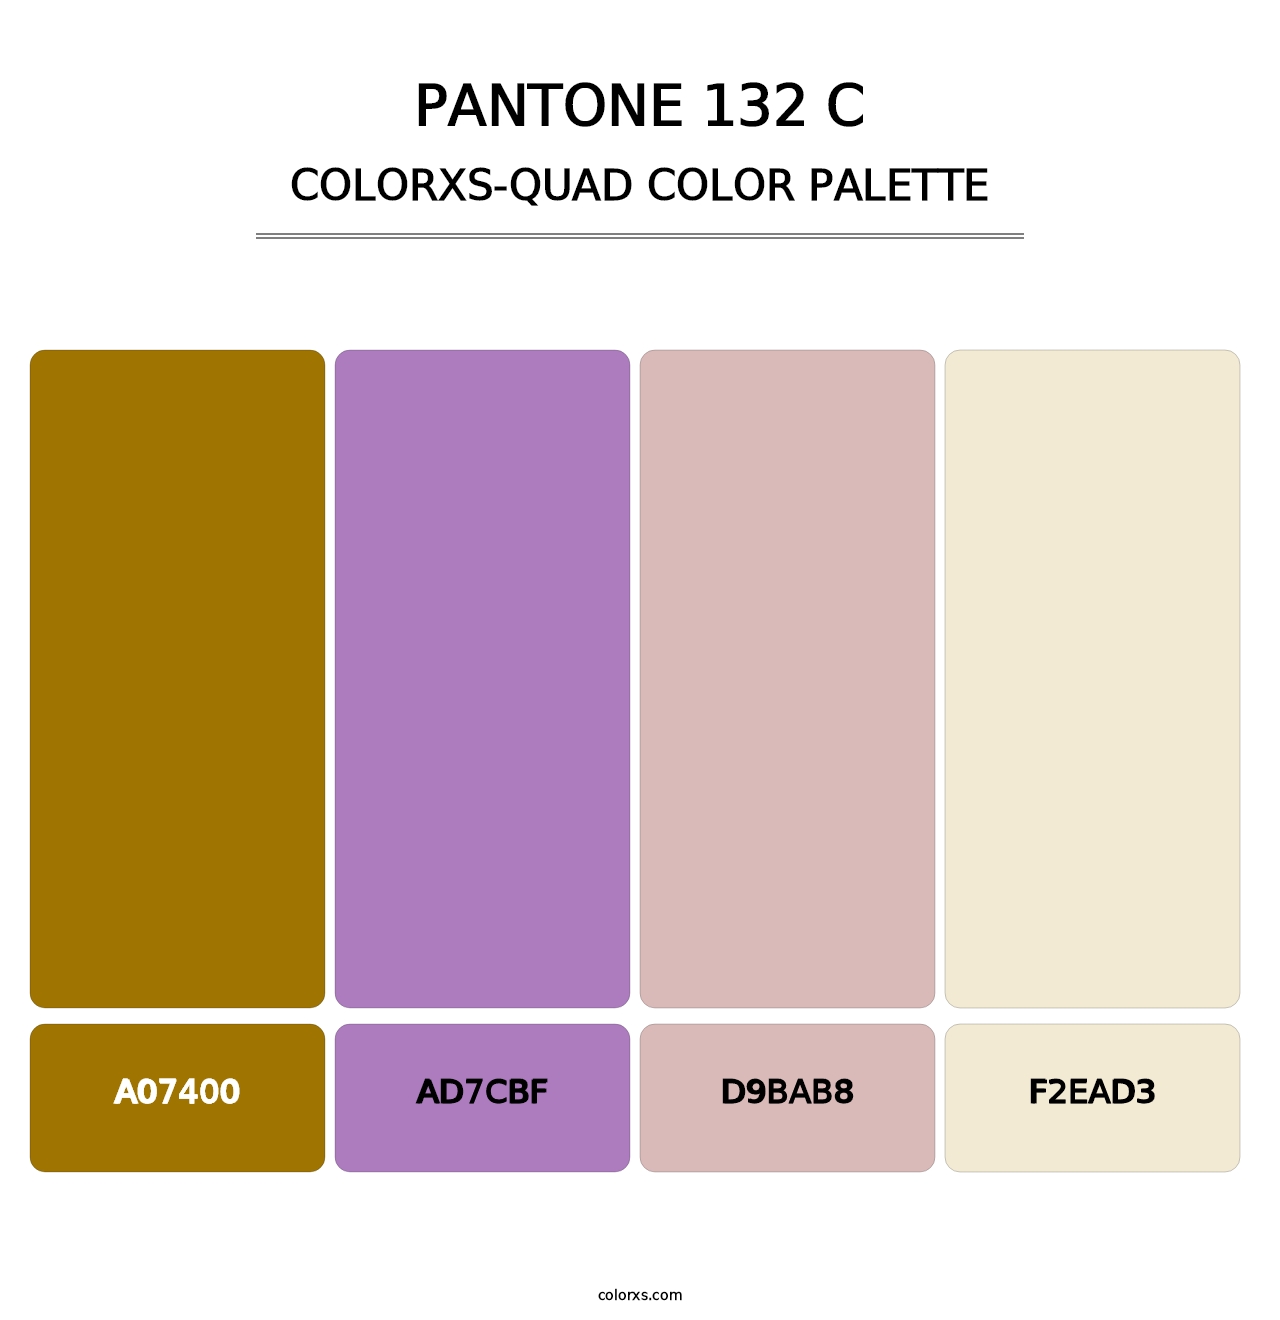 PANTONE 132 C - Colorxs Quad Palette